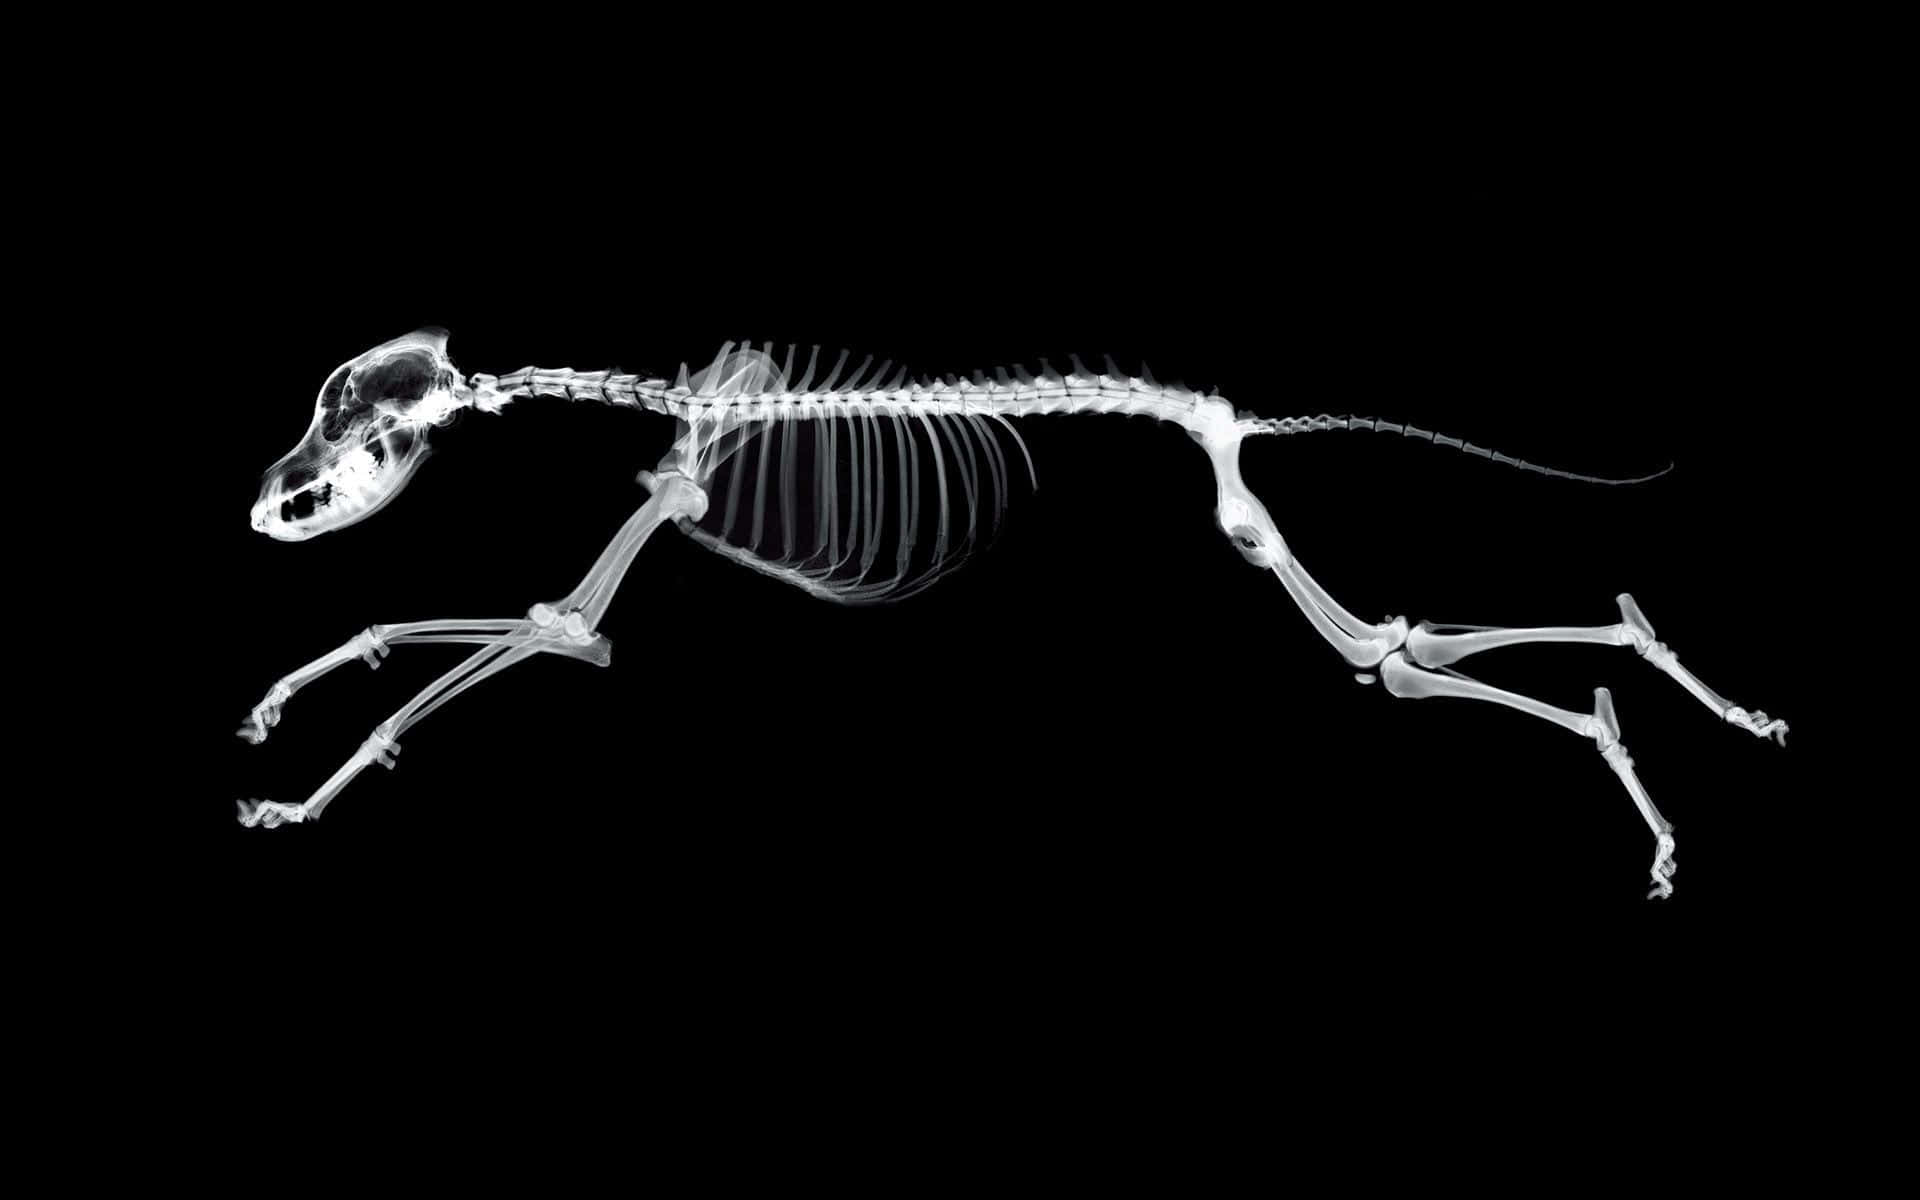 Umesqueleto De Cachorro Correndo Em Um Fundo Preto. Papel de Parede